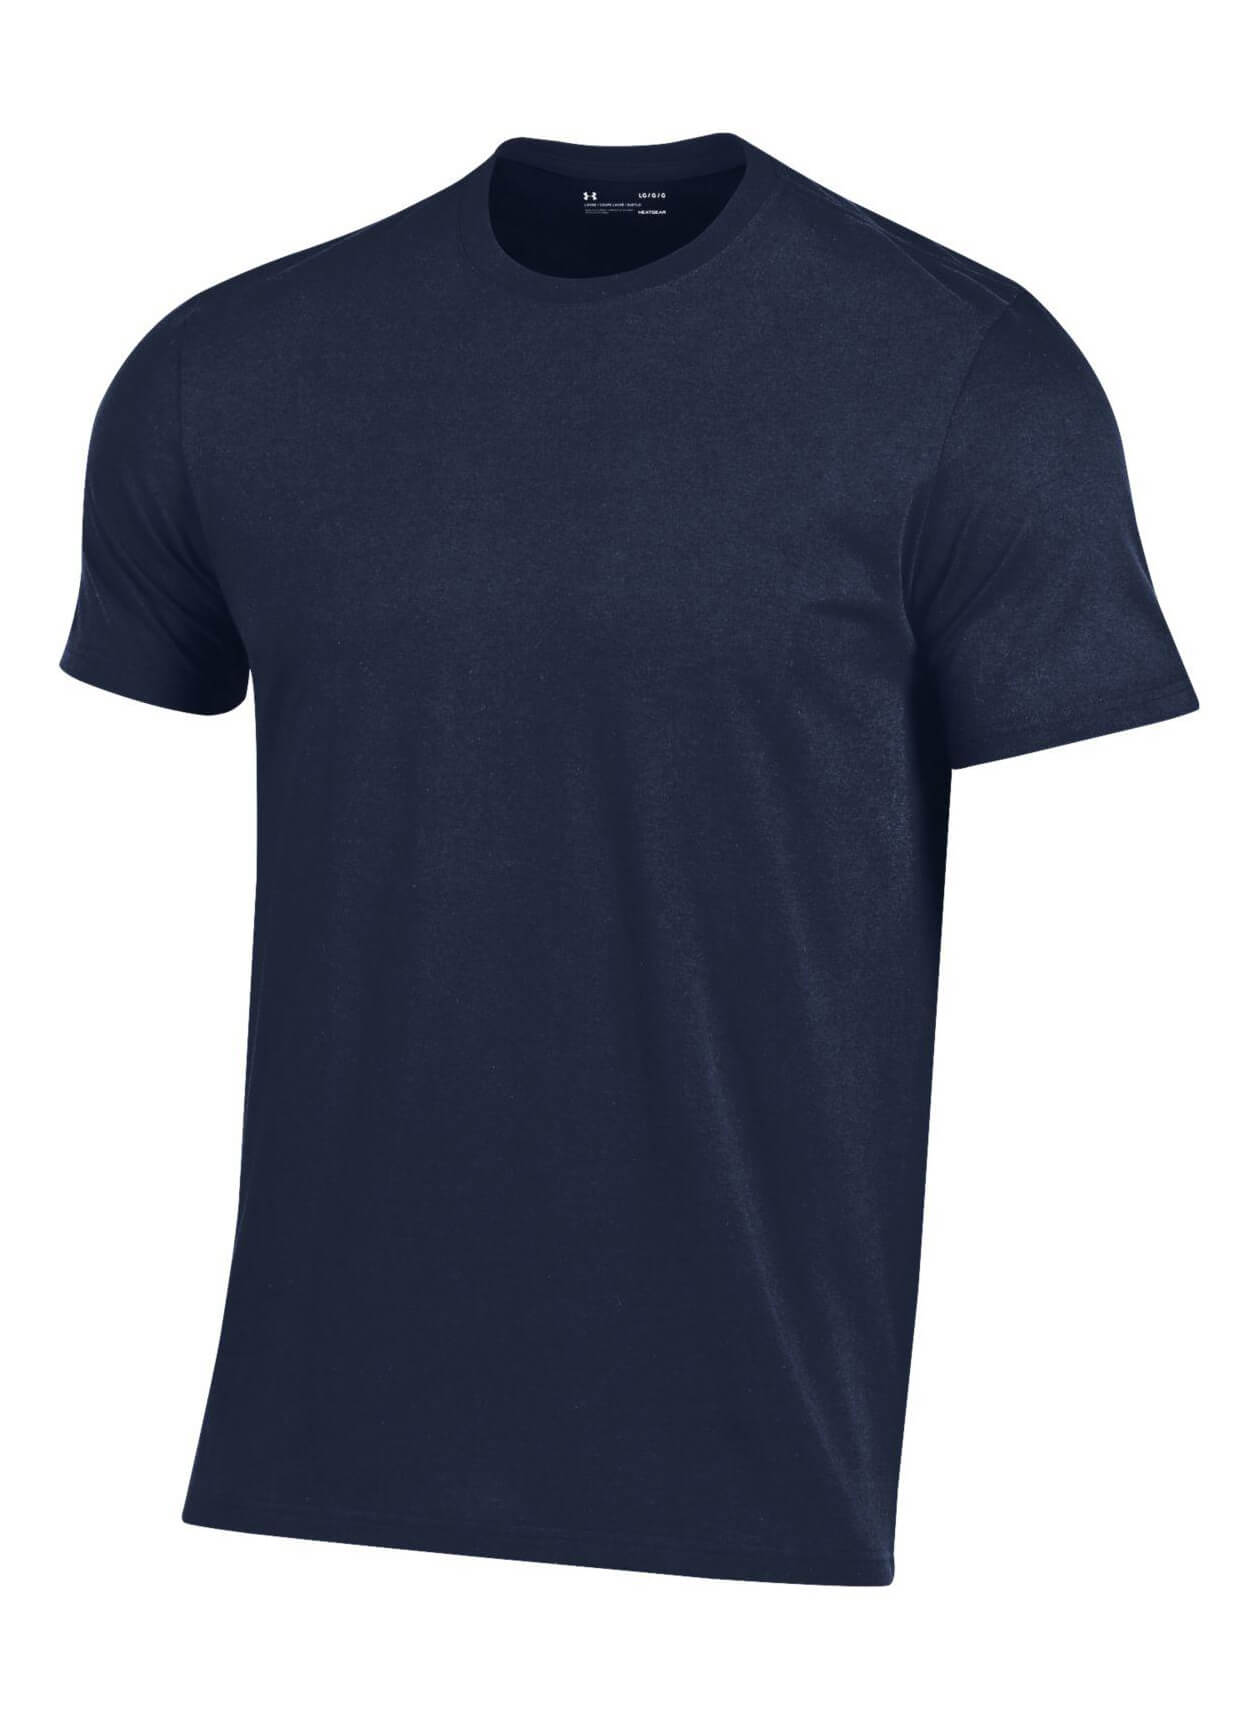 Under Armour UM0706 - Men's Performance Cotton T-Shirt